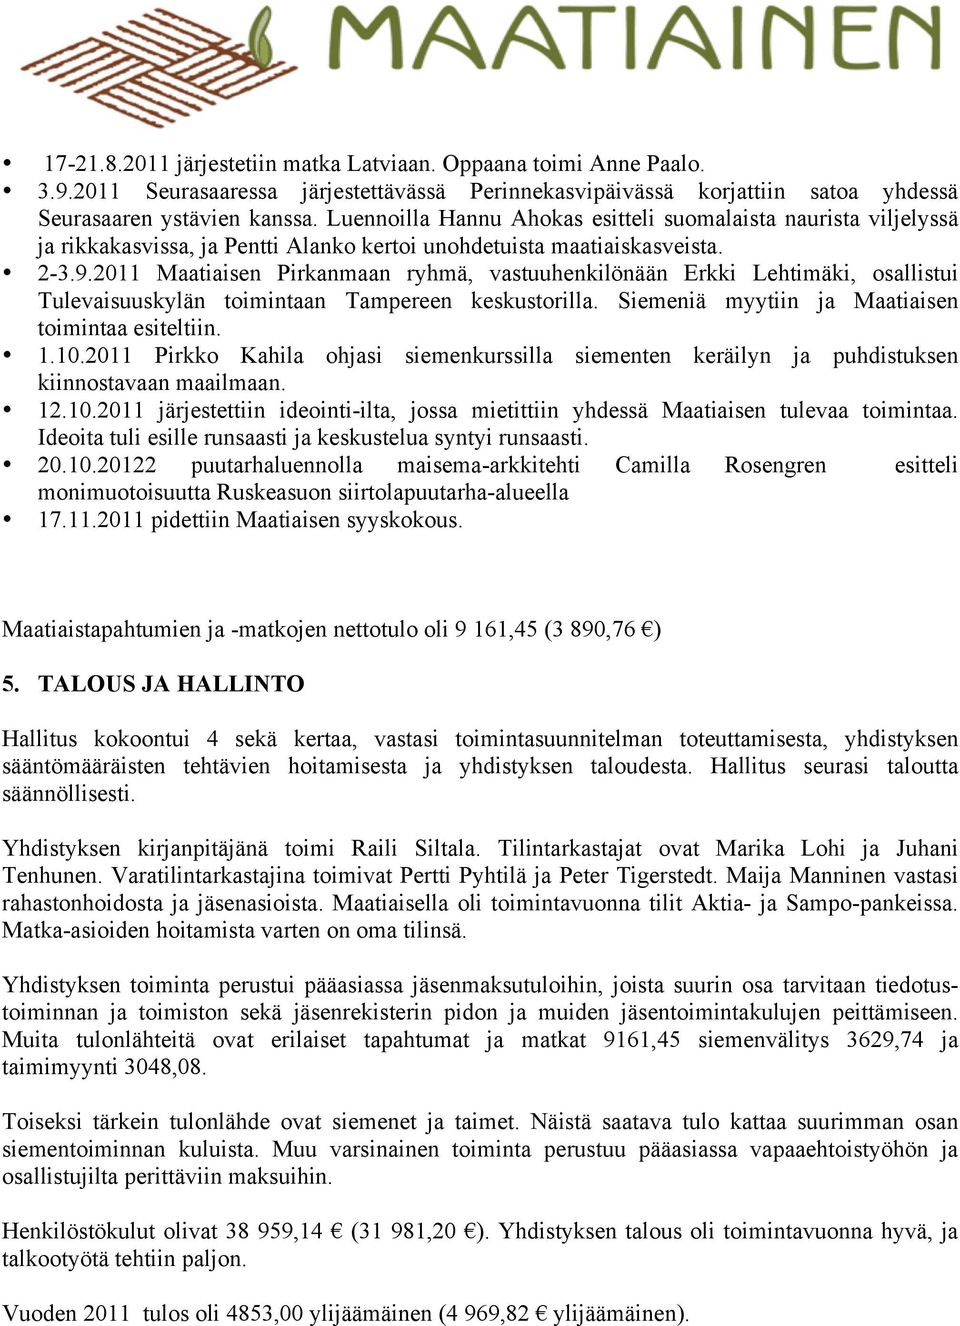 2011 Maatiaisen Pirkanmaan ryhmä, vastuuhenkilönään Erkki Lehtimäki, osallistui Tulevaisuuskylän toimintaan Tampereen keskustorilla. Siemeniä myytiin ja Maatiaisen toimintaa esiteltiin. 1.10.